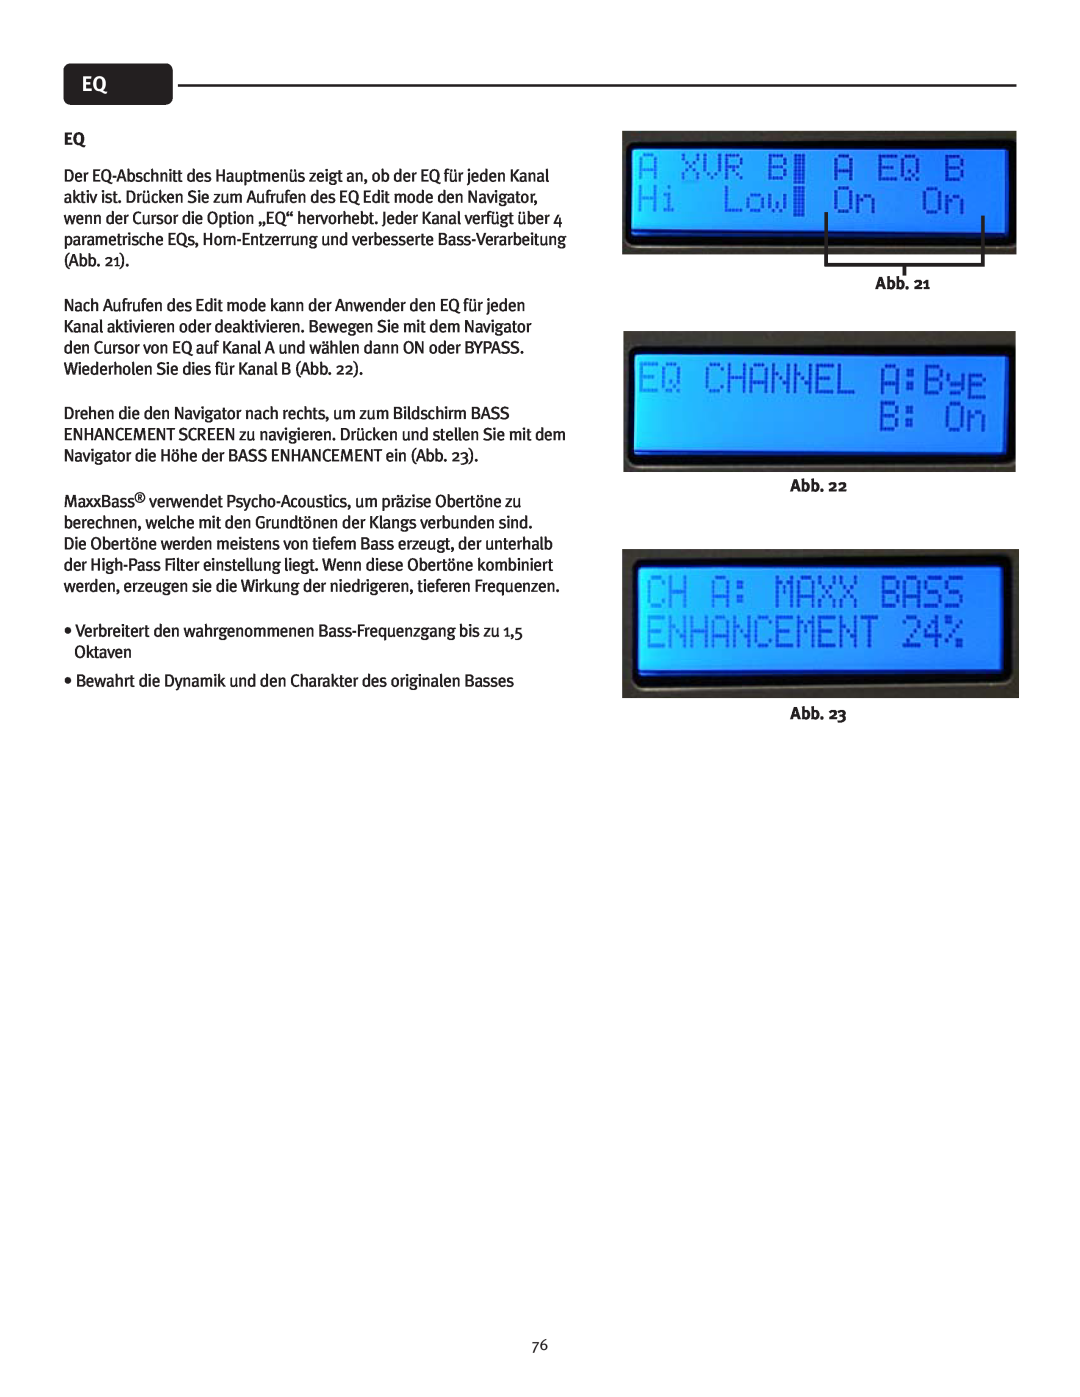 Peavey IPR 3000, IPR 6000, IPR 4500, IPR 1600 manual Drehen die den Navigator nach rechts, um zum Bildschirm BASS, Abb Abb 